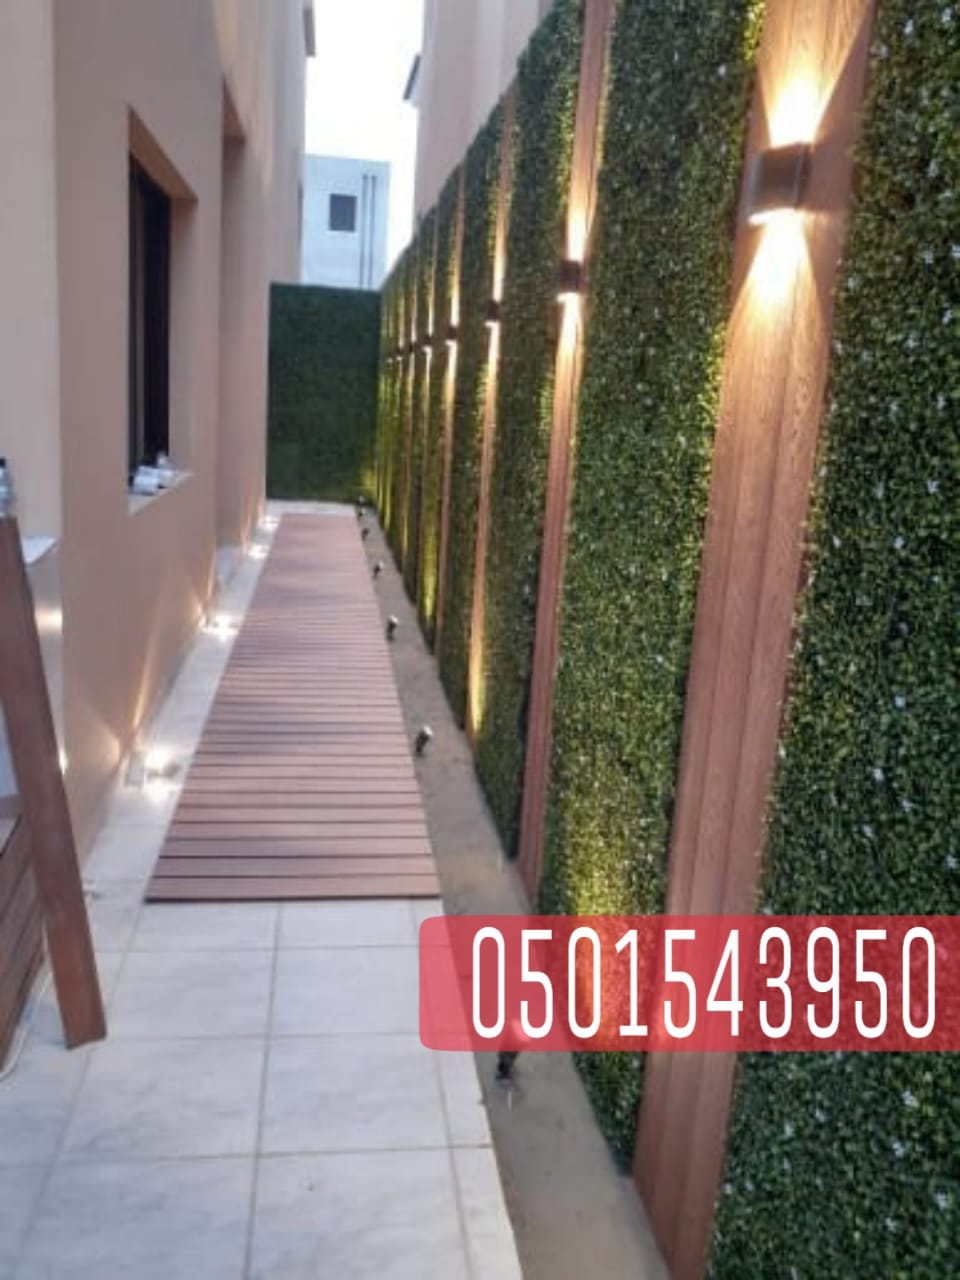 تركيب برجولات خشبية في جدة , تنسيق حدائق في جدة , 0501543950 P_2078ieq8y8